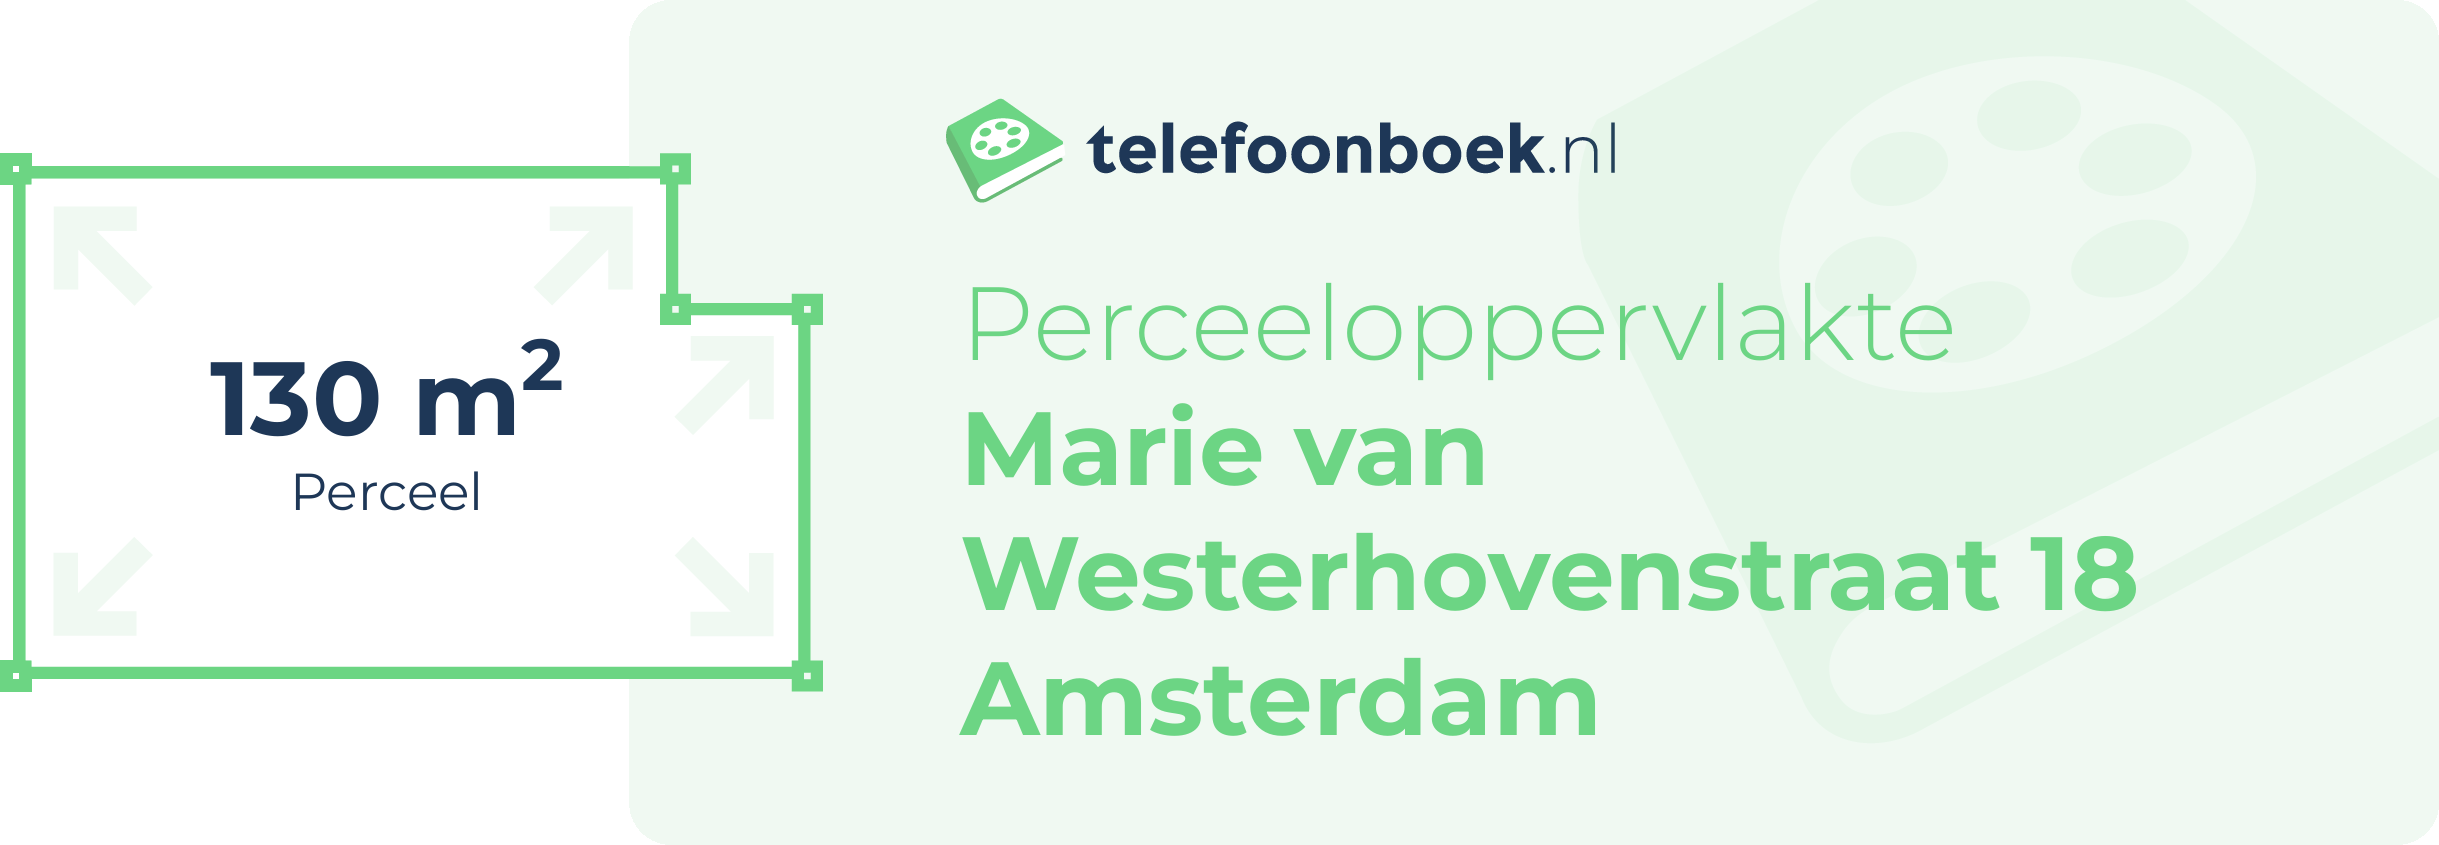 Perceeloppervlakte Marie Van Westerhovenstraat 18 Amsterdam